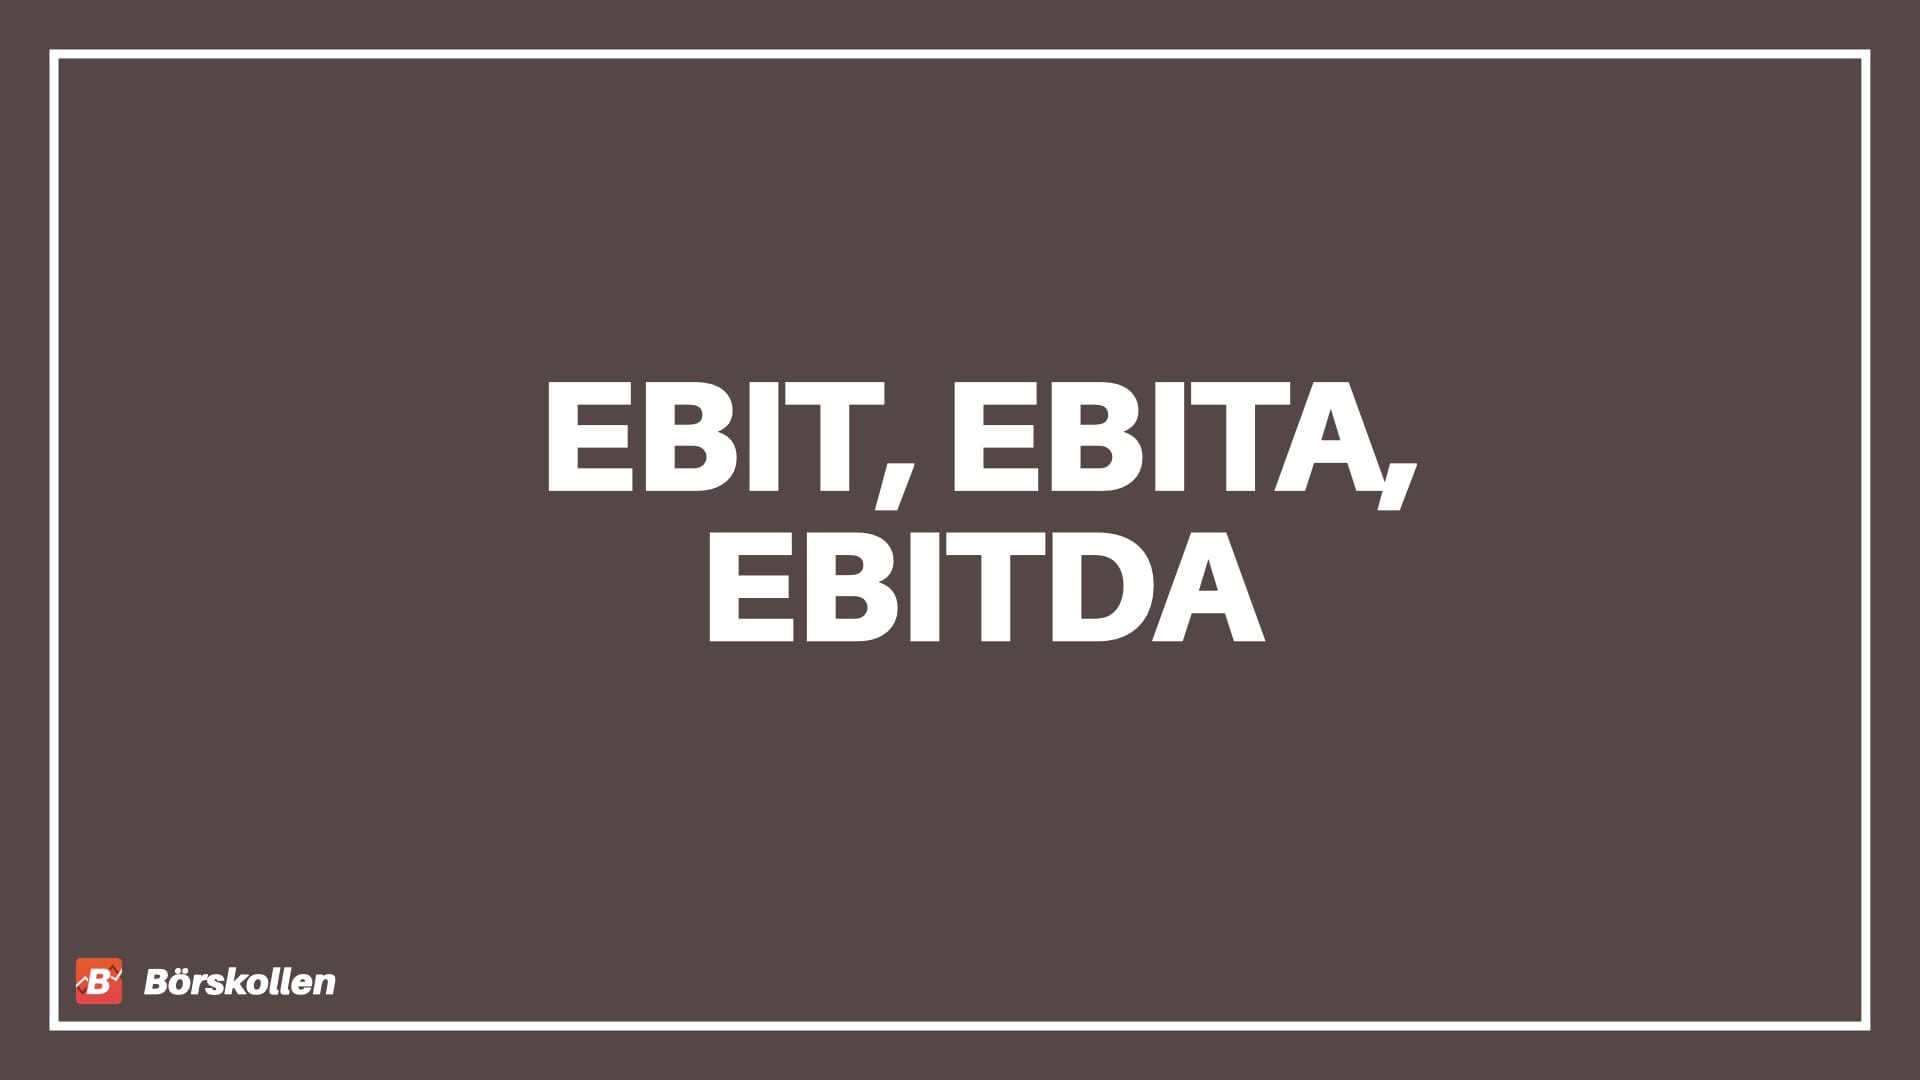 Förklaring av EBIT, EBITA och EBITDA